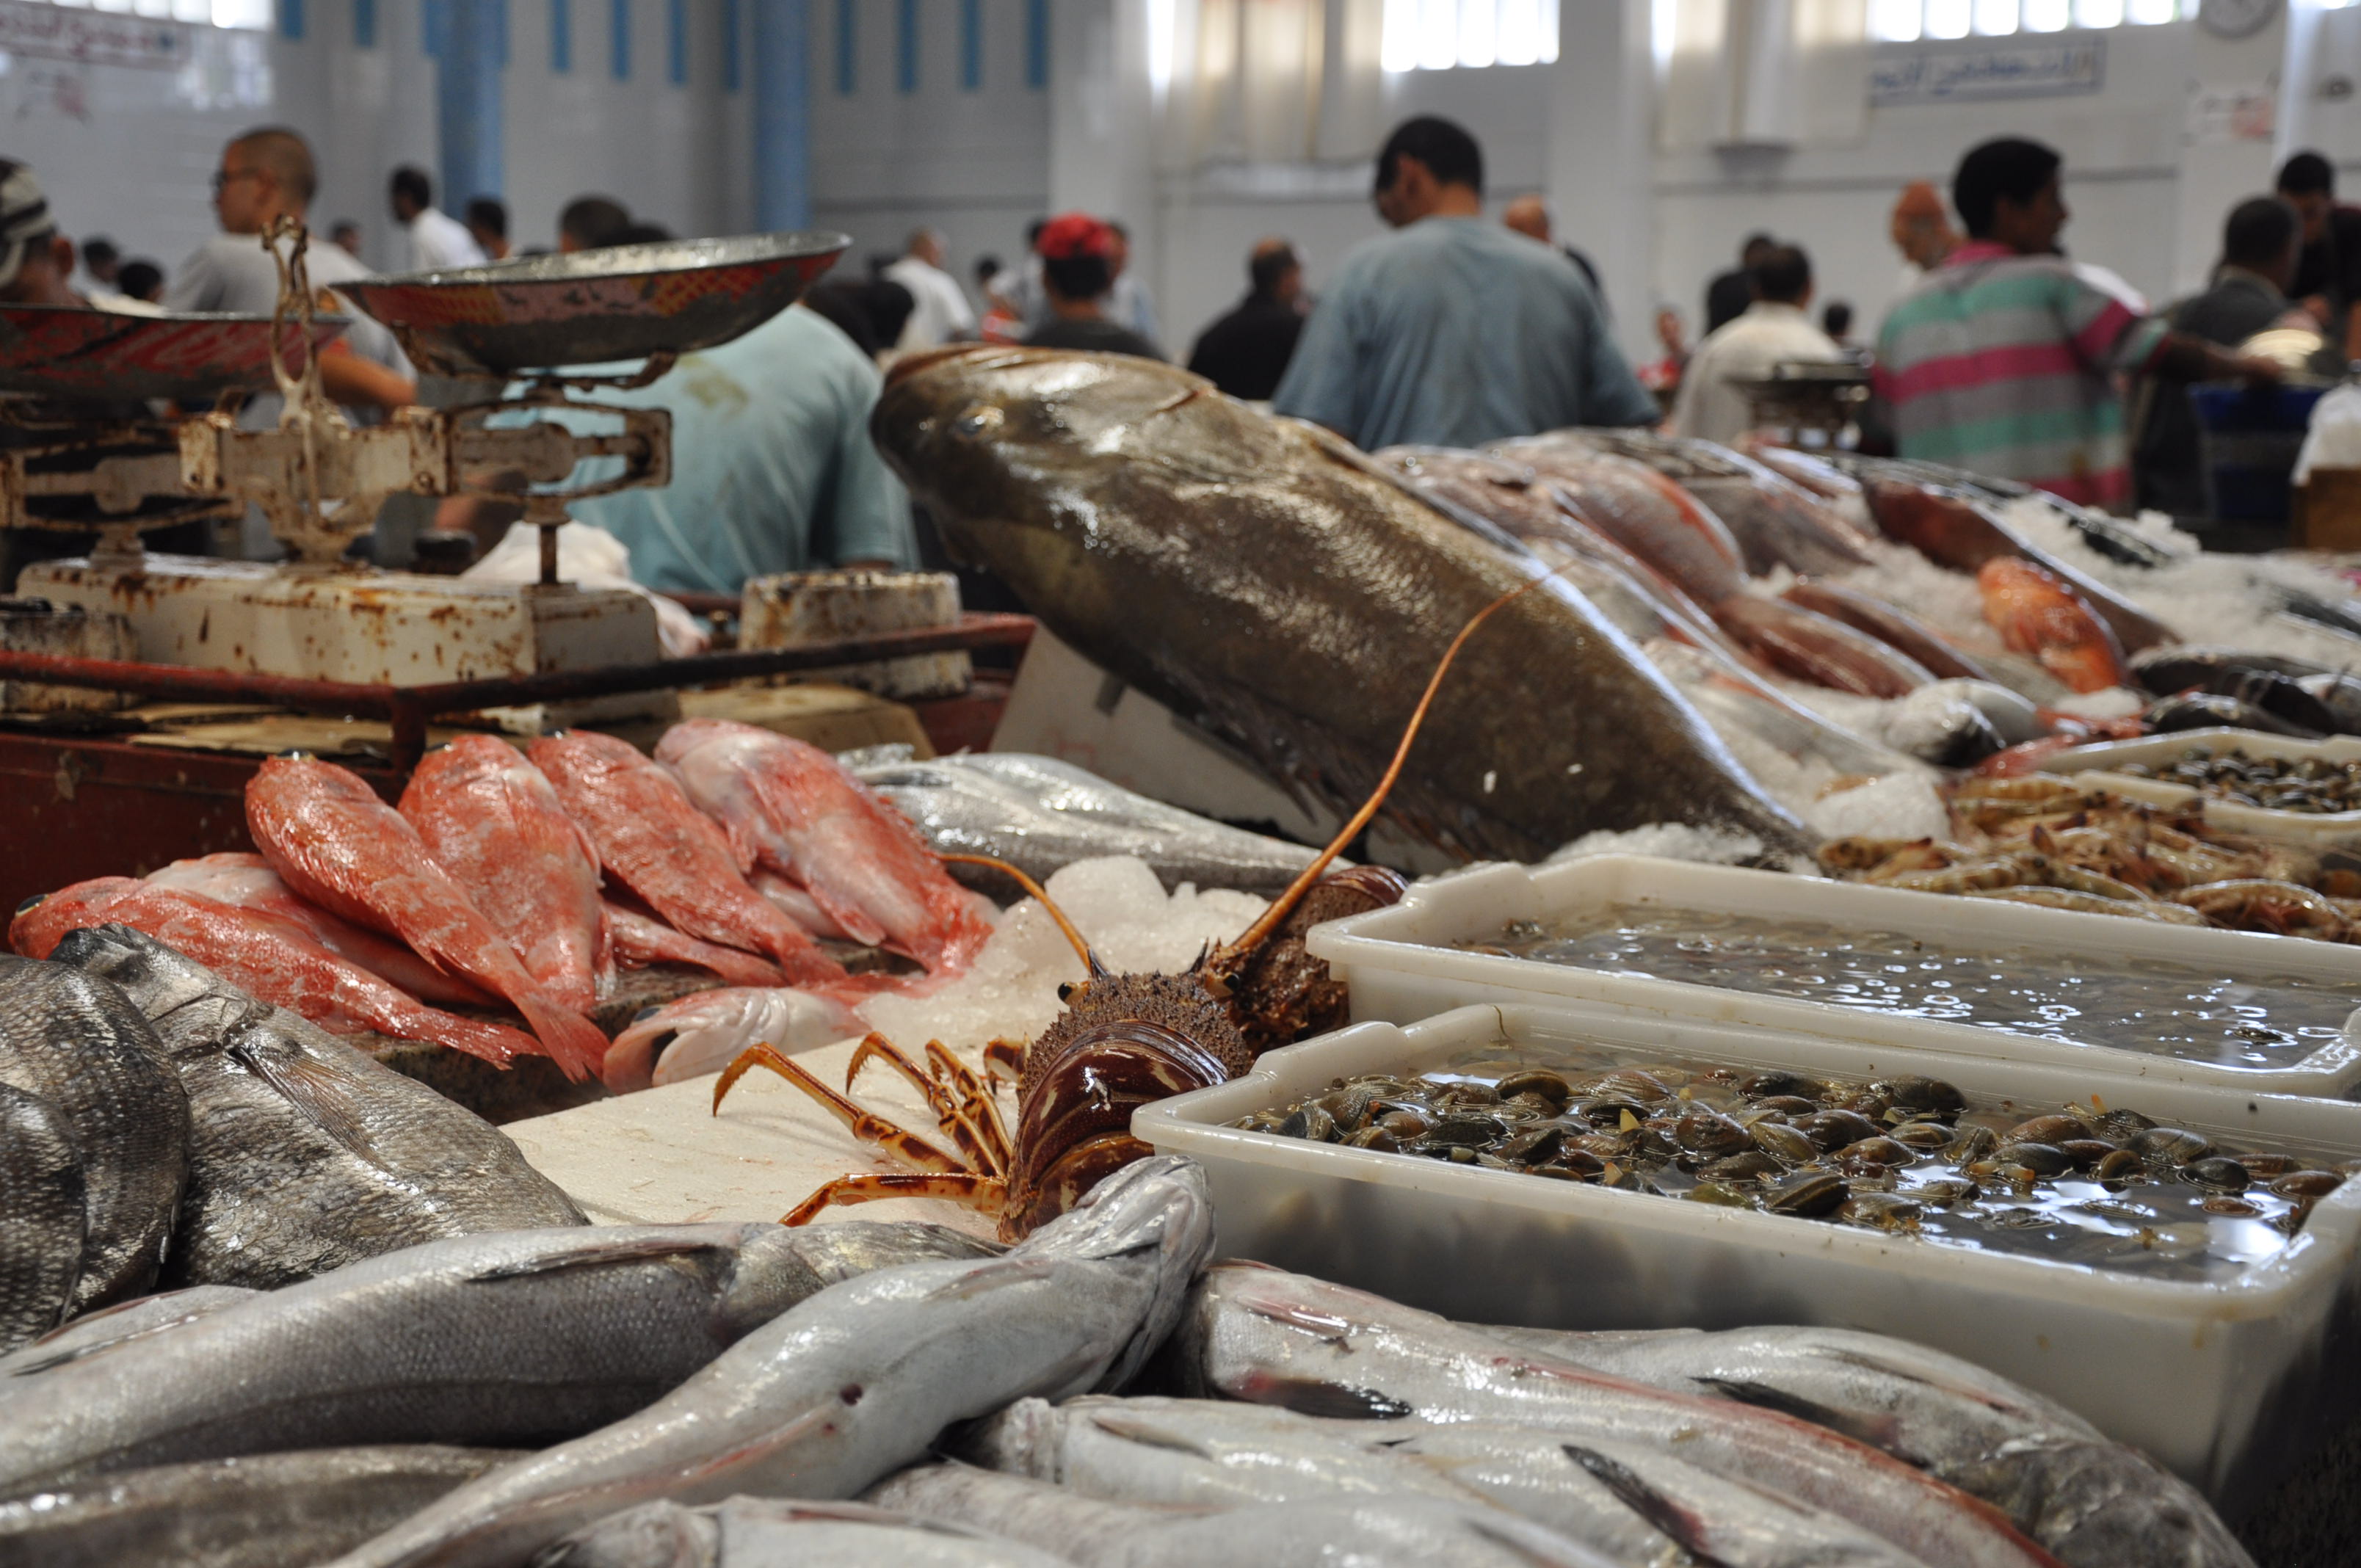 Avec plus de 700.000 emplois et une production annuelle d’environ 1,4 million de tonnes, le secteur de la pêche occupe une place très importante dans l’économie du pays.